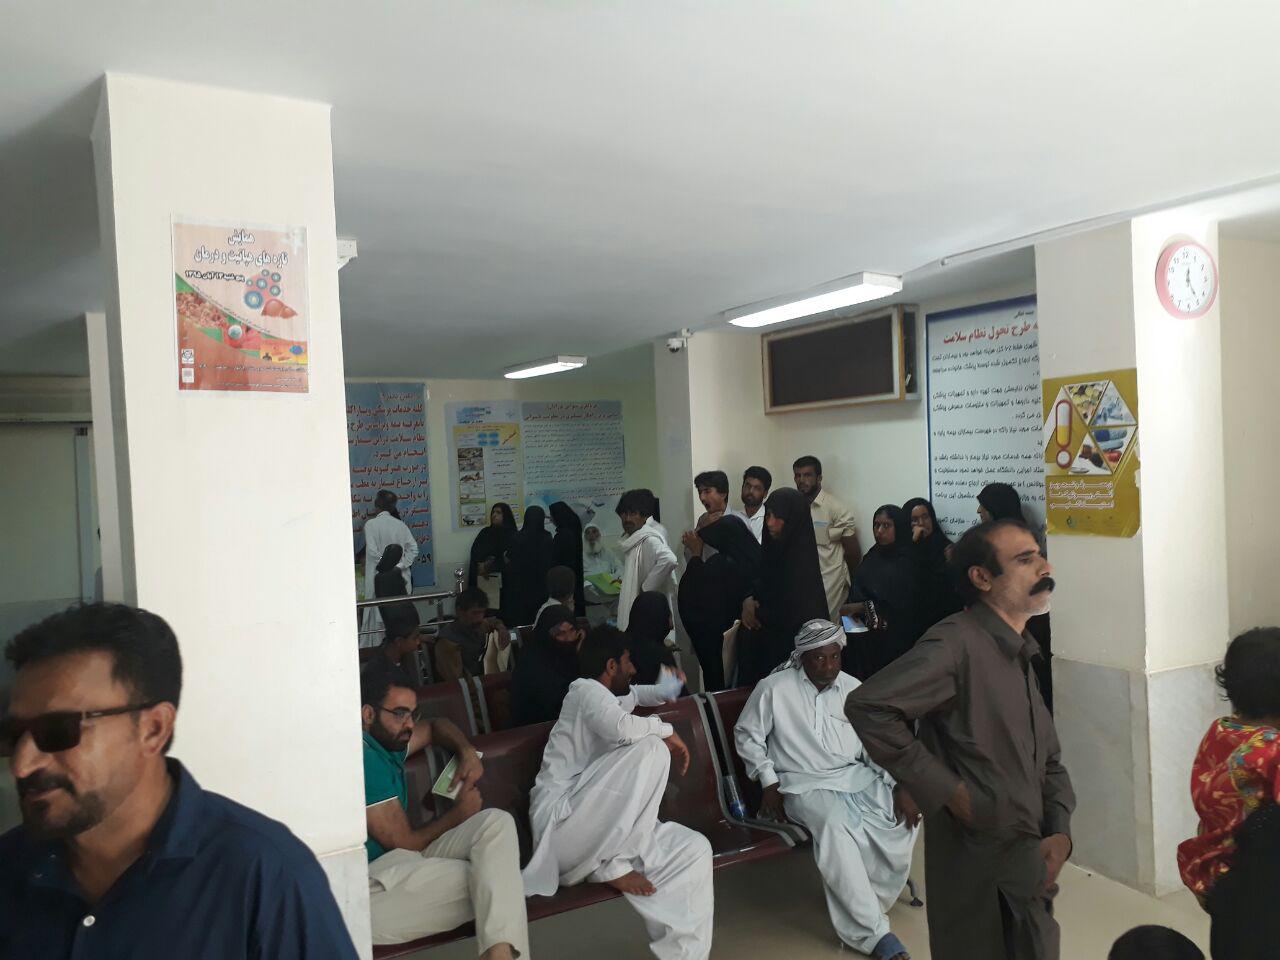 ویزیت رایگان 600 بیمار در حاشیه شهر چابهار